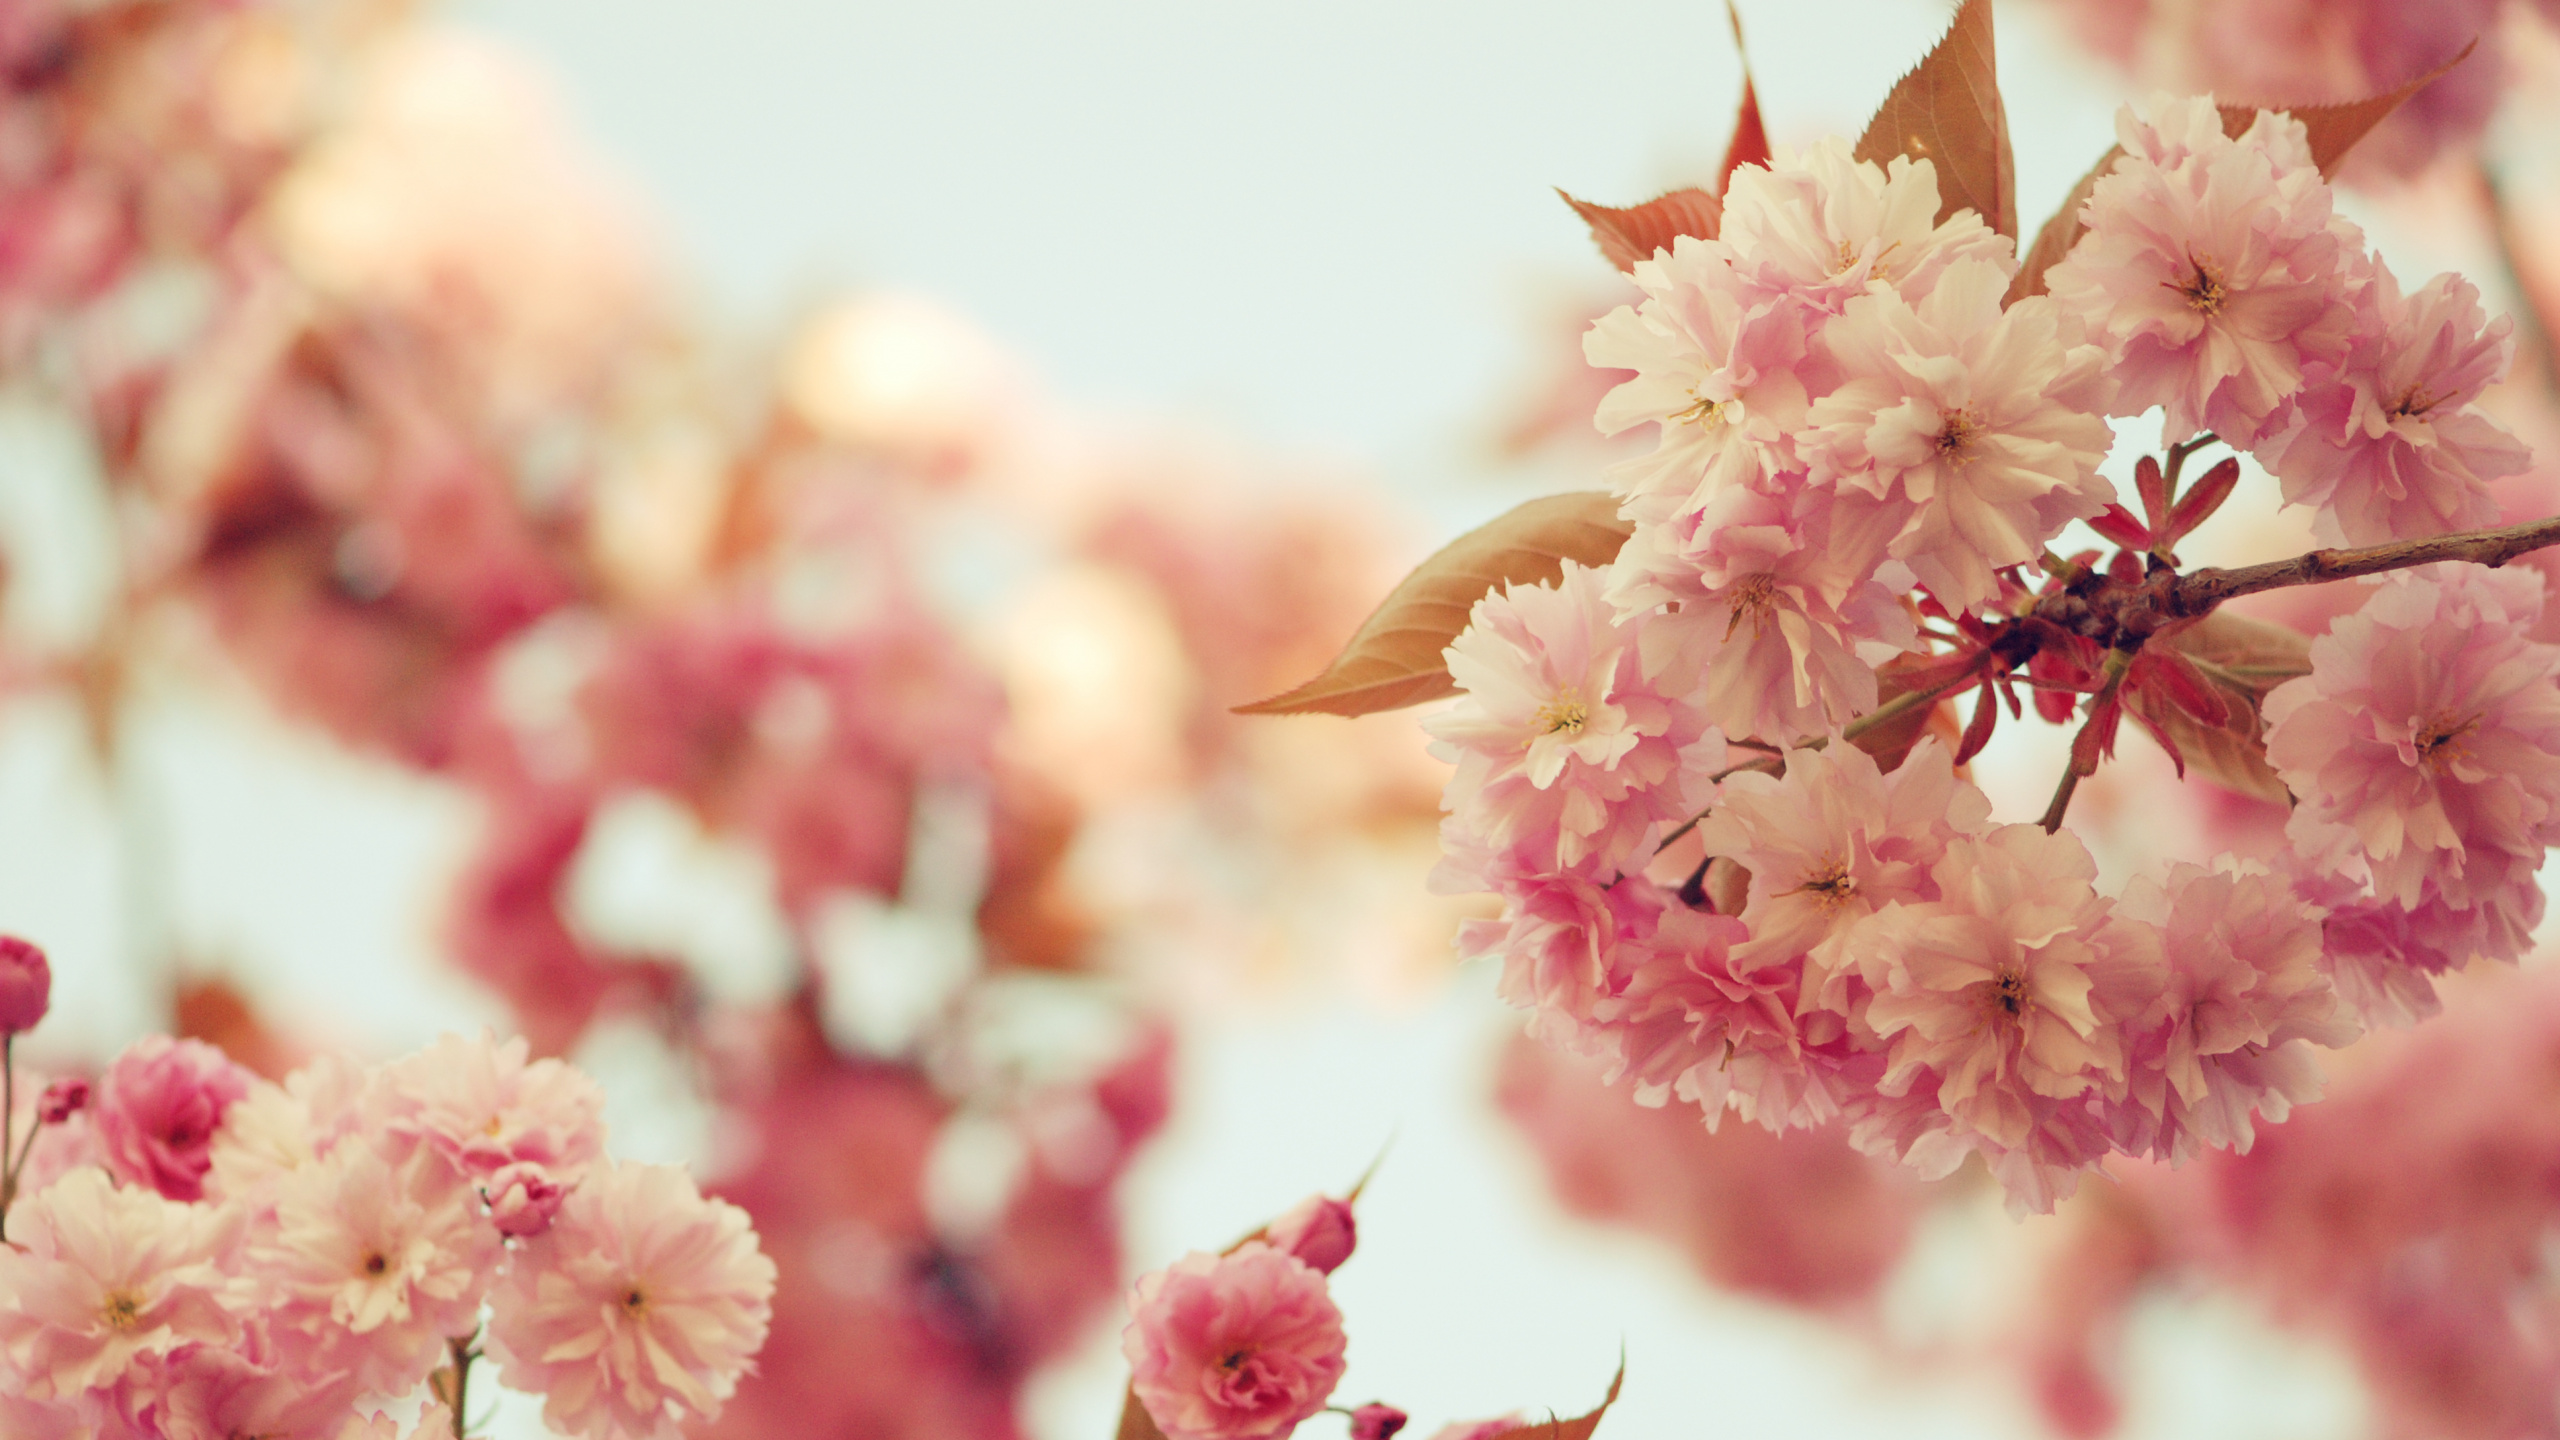 粉红色, 开花, 弹簧, 樱花, 梅梅 壁纸 2560x1440 允许